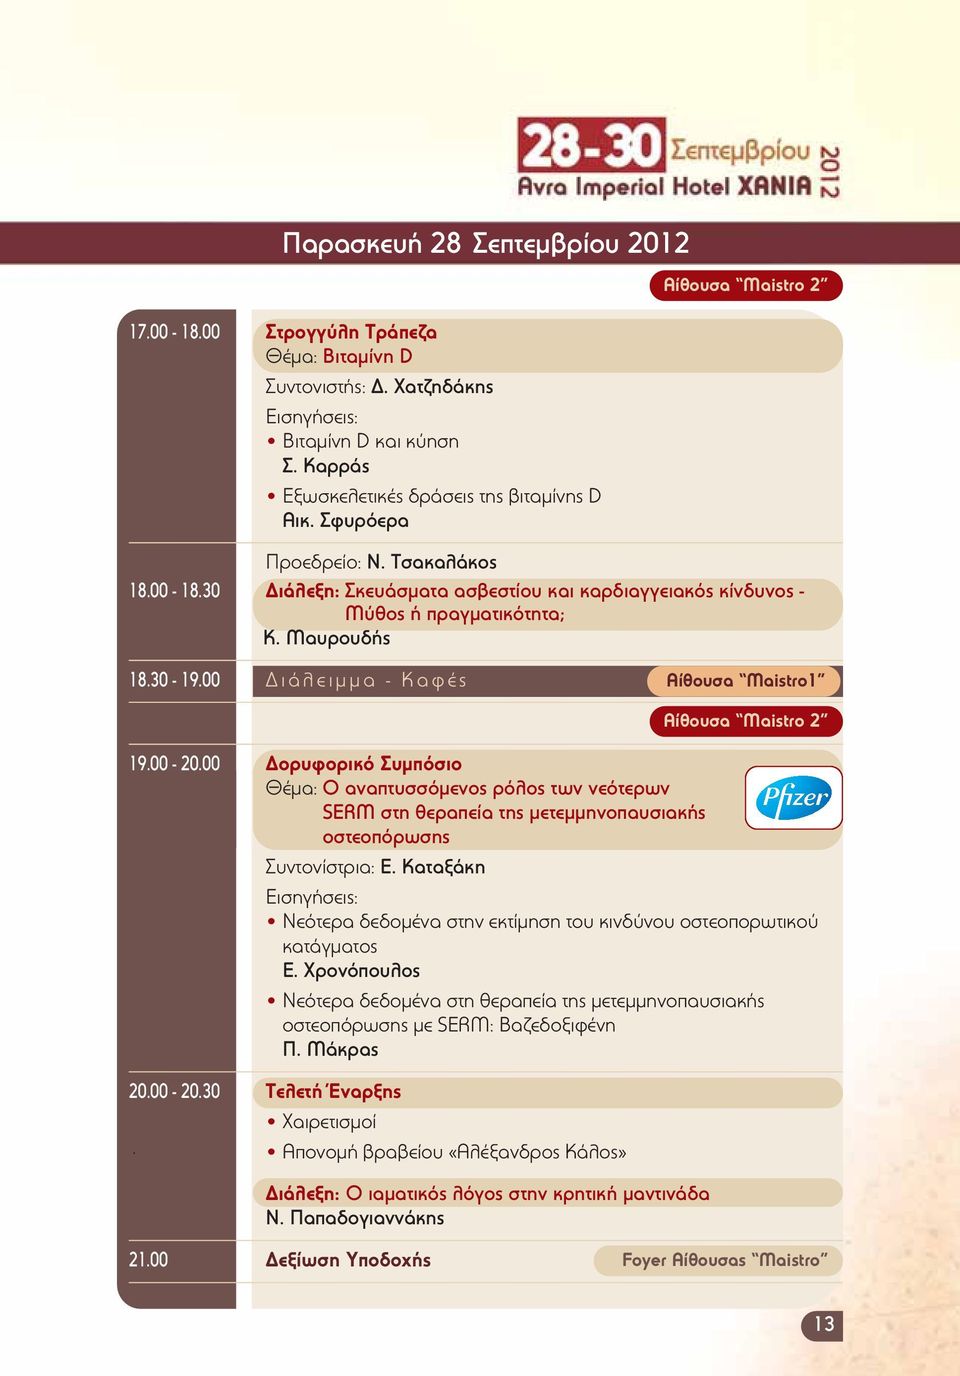 00 Διάλειμμα - Καφές Αίθουσα Maistro1 19.00-20.00 Δορυφορικό Συμπόσιο Θέμα: Ο αναπτυσσόμενος ρόλος των νεότερων SERM στη θεραπεία της μετεμμηνοπαυσιακής οστεοπόρωσης Συντονίστρια: Ε.